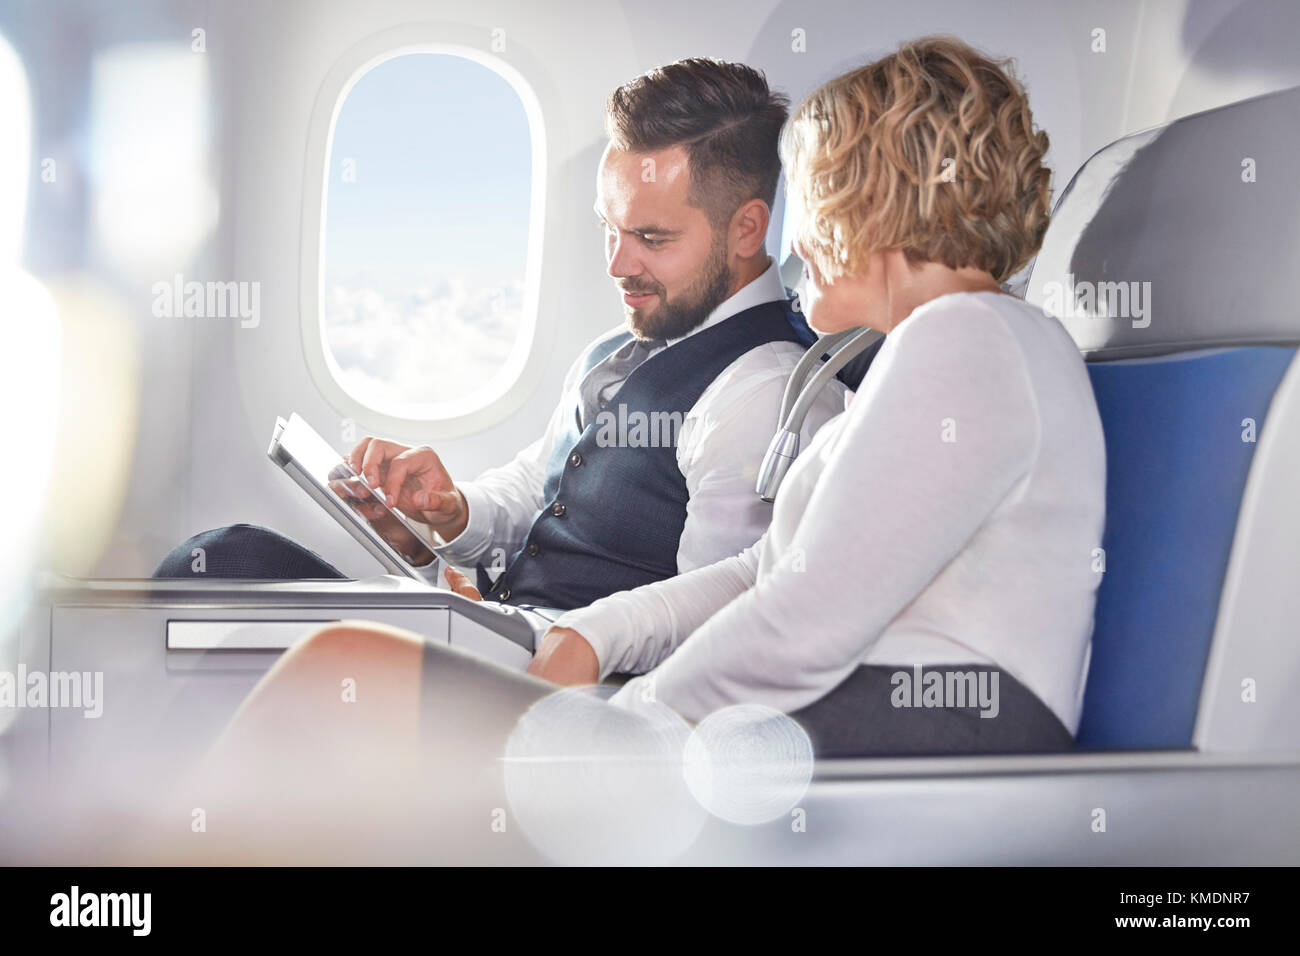 Homme d'affaires et femme d'affaires utilisant une tablette numérique dans un avion Banque D'Images